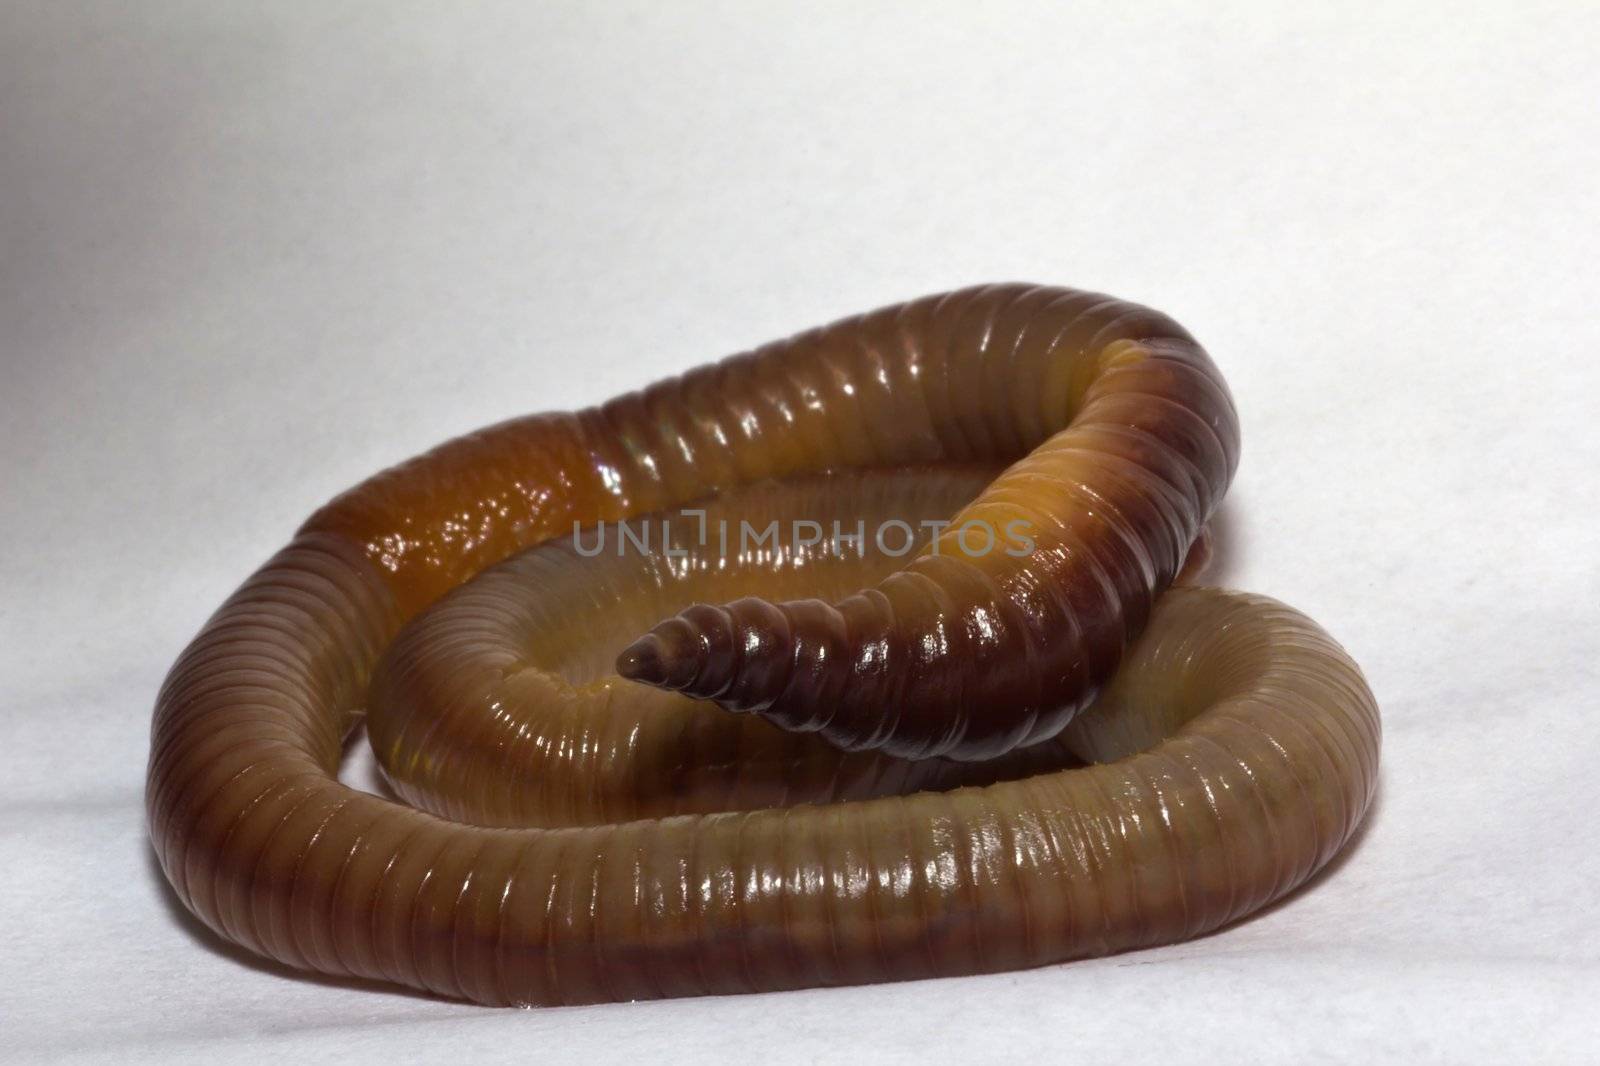 Common garden earth worms